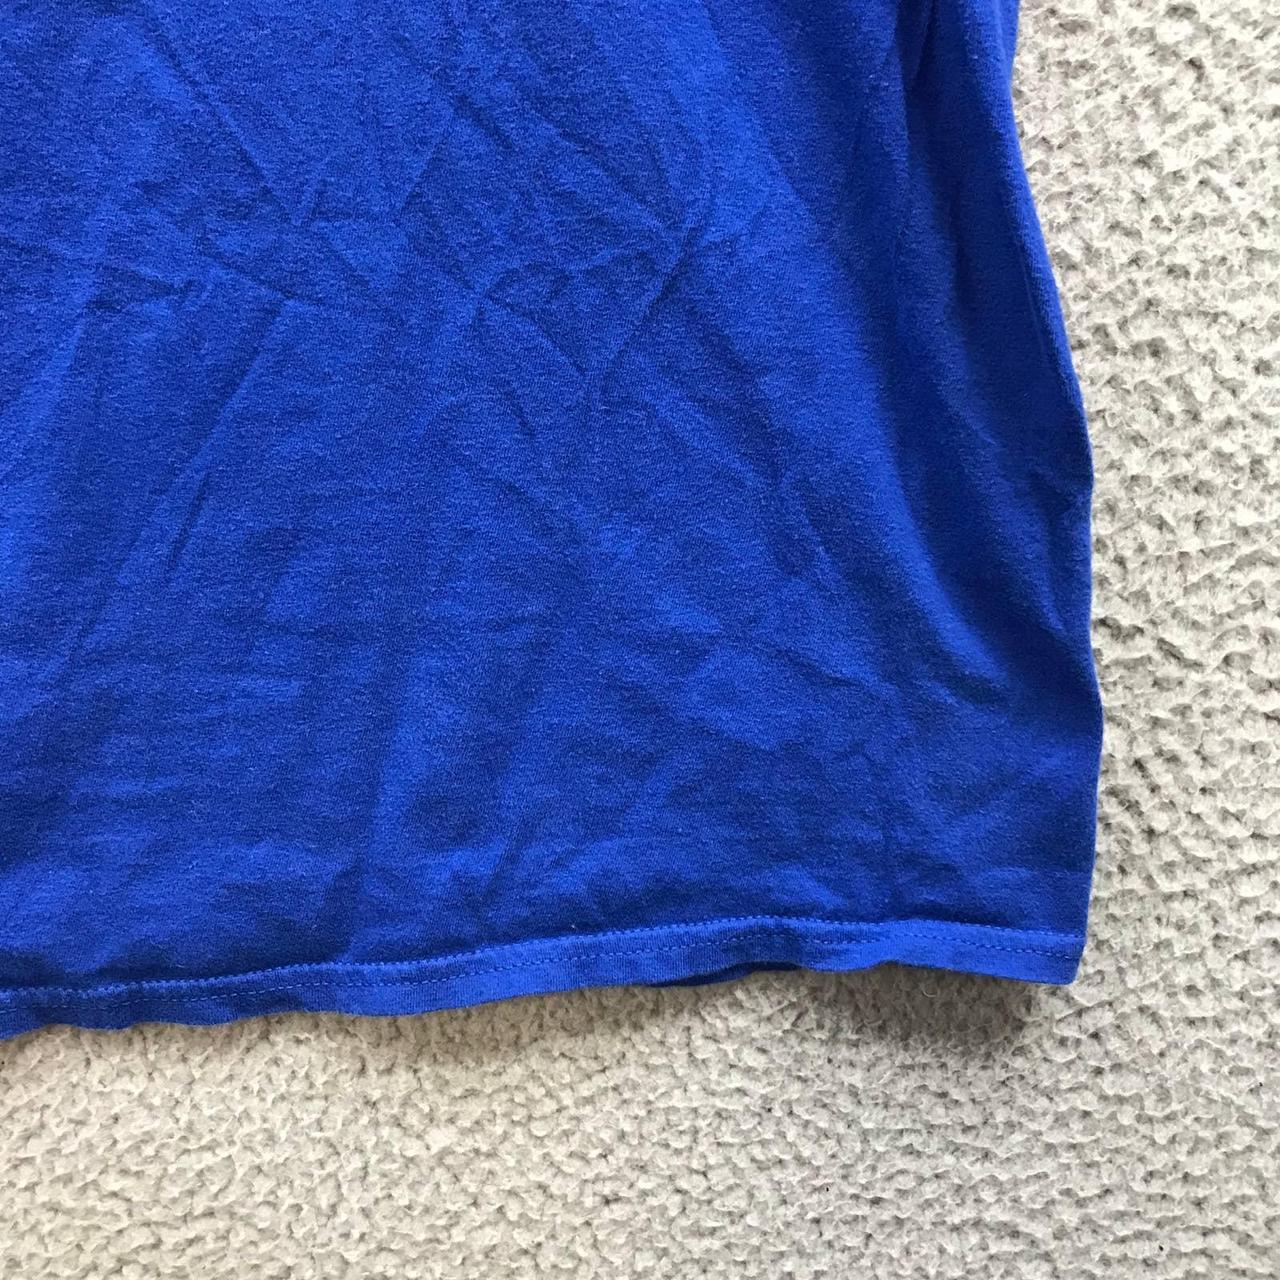 Chicago Cubs T-Shirt Men's Size Large L Short Sleeve - Depop